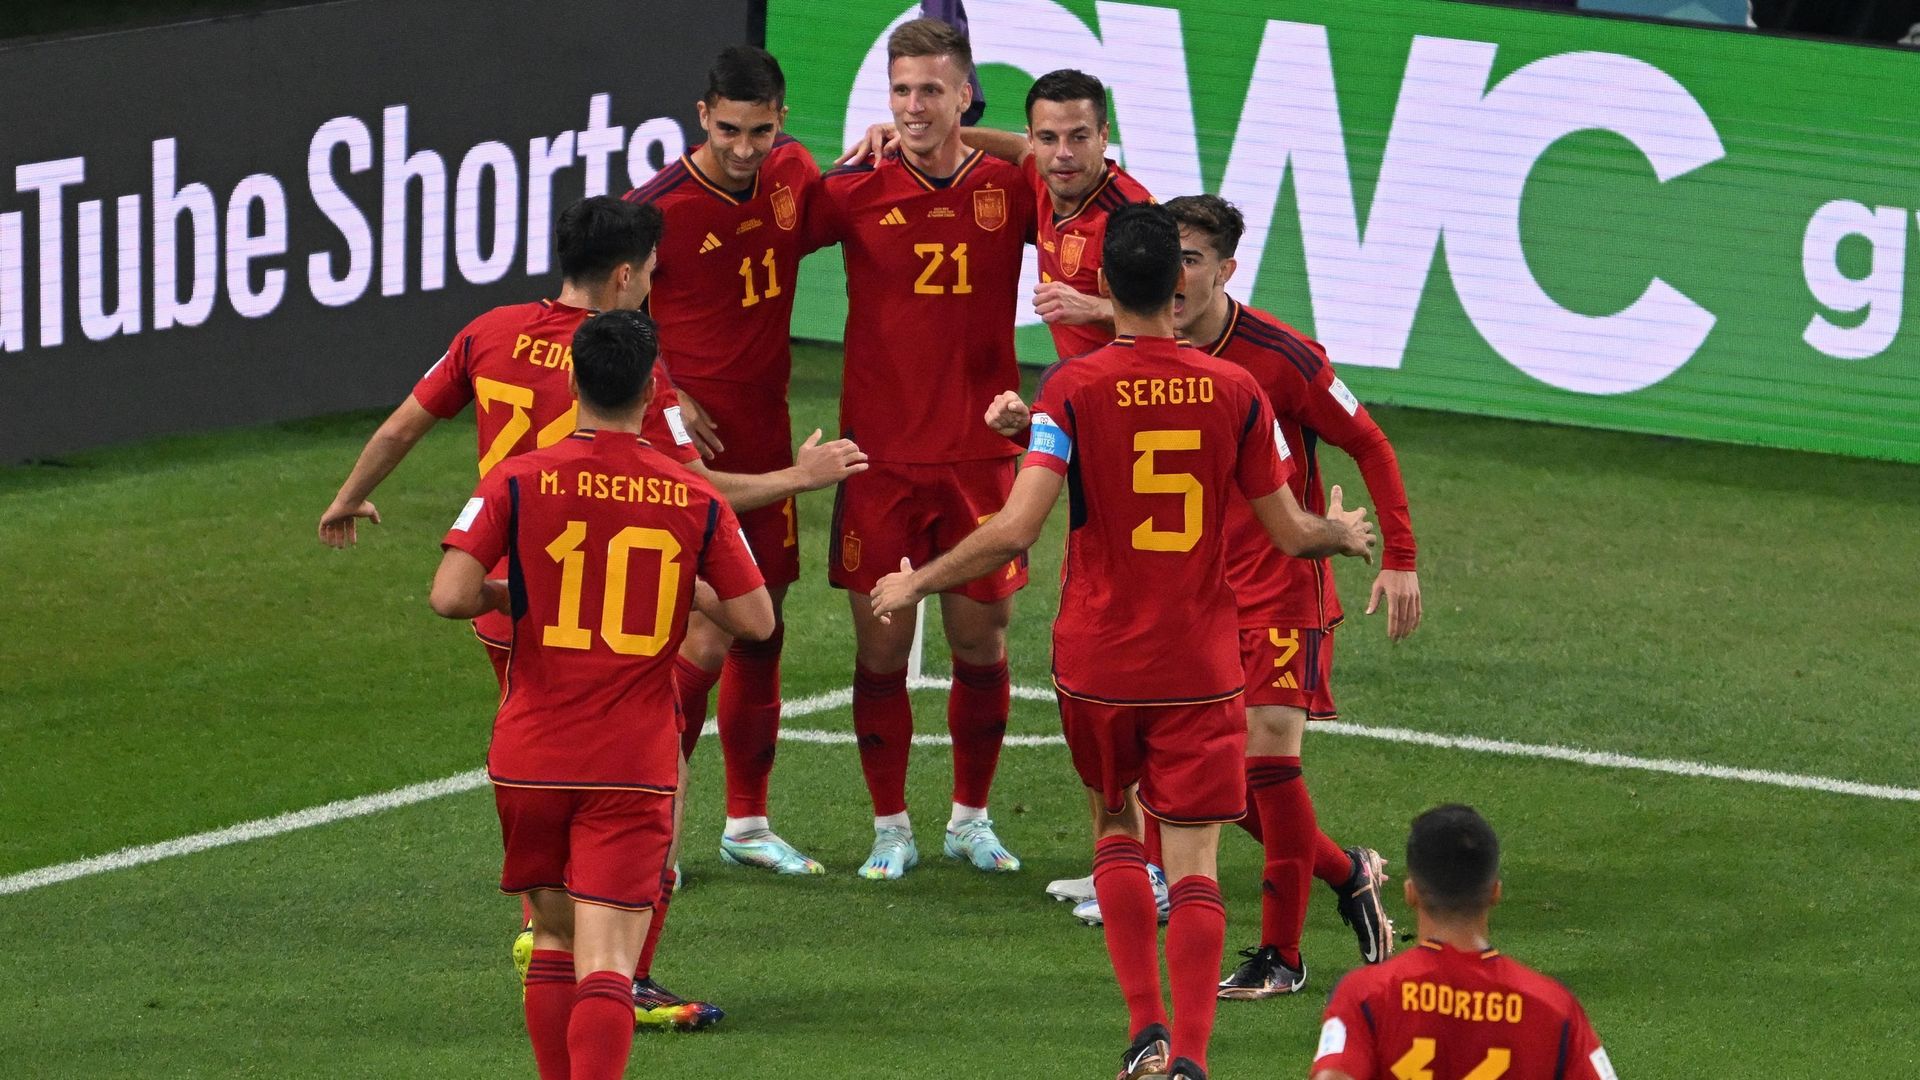 Mondiali 2022: la Spagna si inserisce perfettamente nel torneo presentando una festa contro il Costa Rica (7-0)